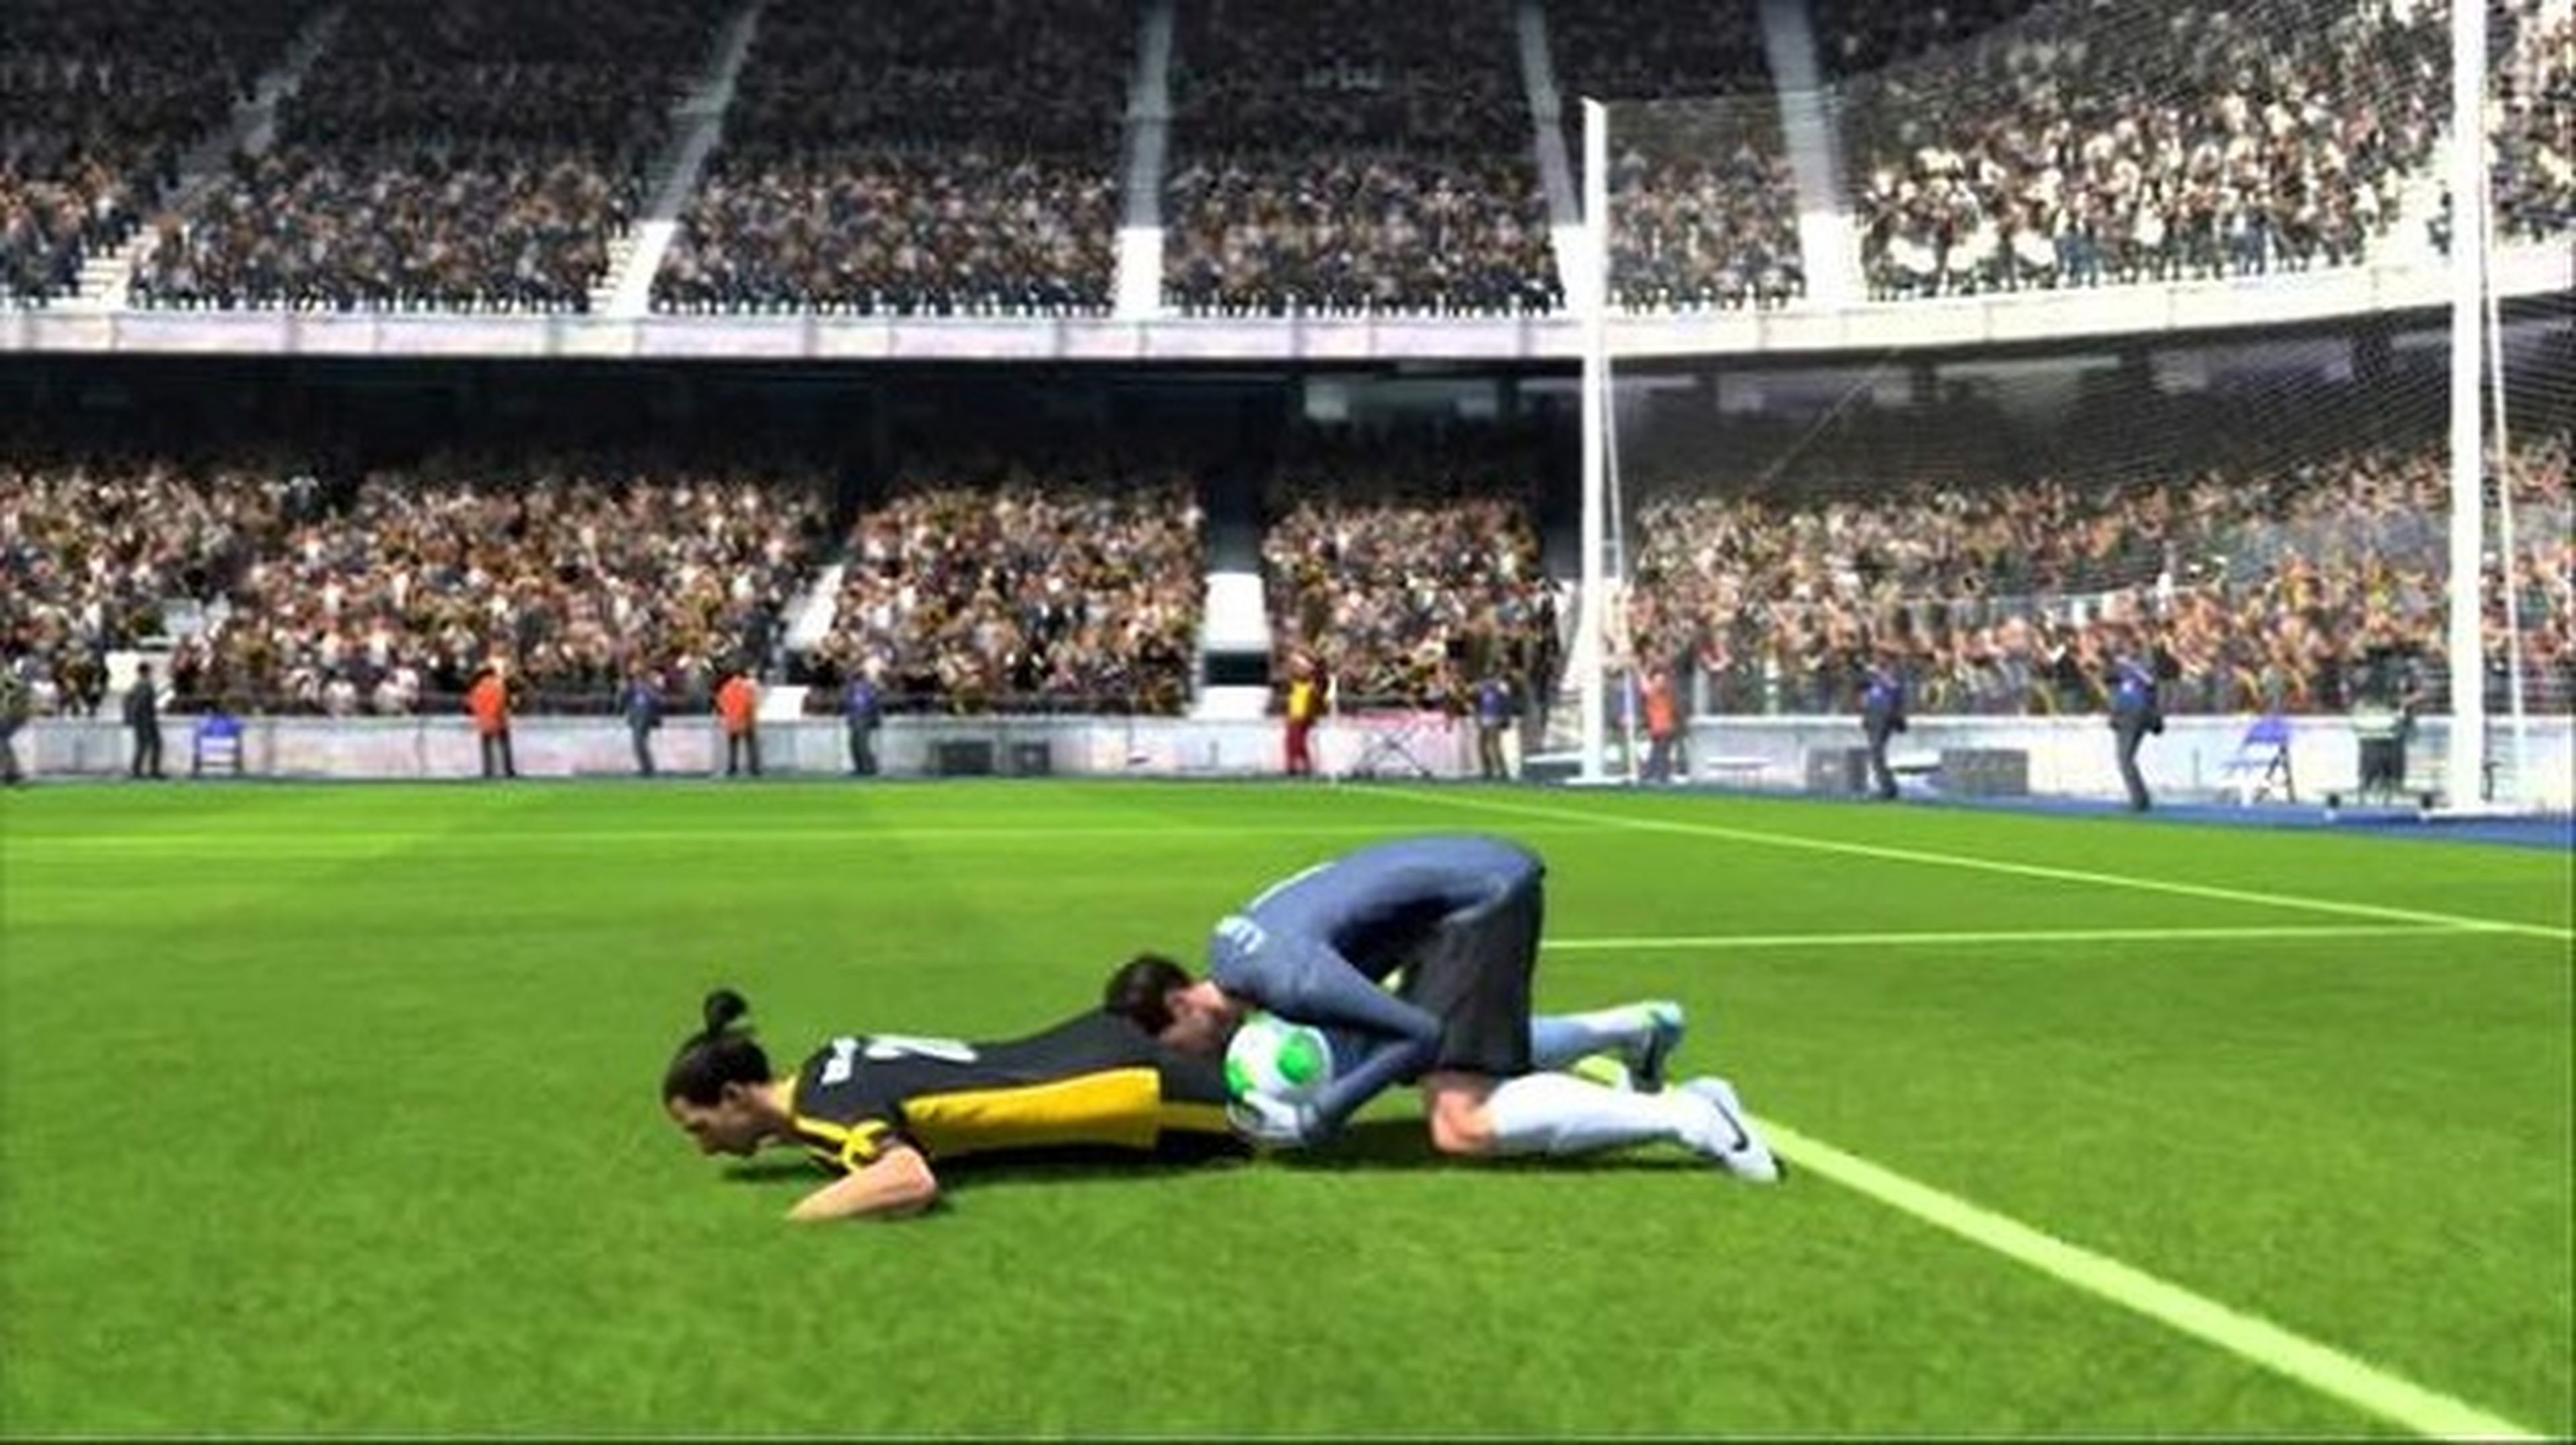 Ya está disponible la actualización de FIFA 15 para PC